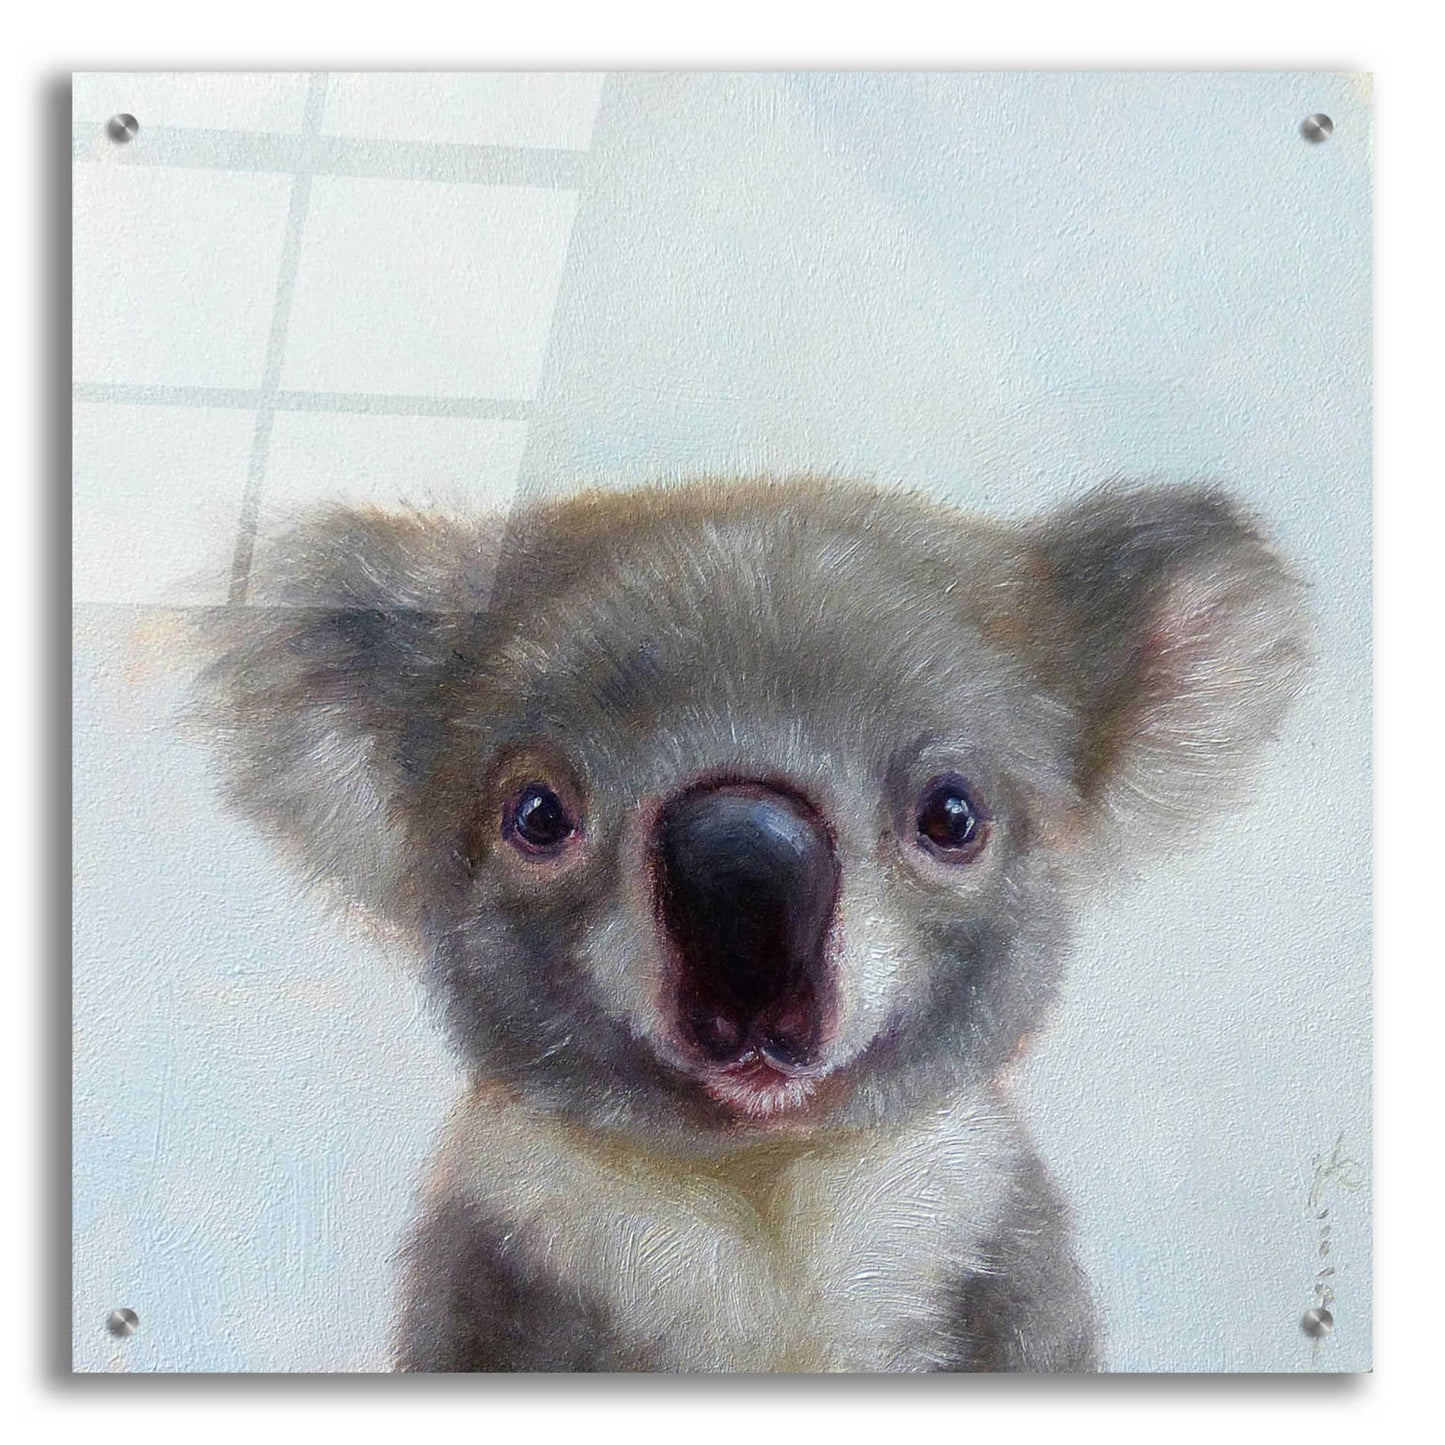 Epic Art 'Lil Koala' by Lucia Heffernan, Acrylic Glass Wall Art,24x24